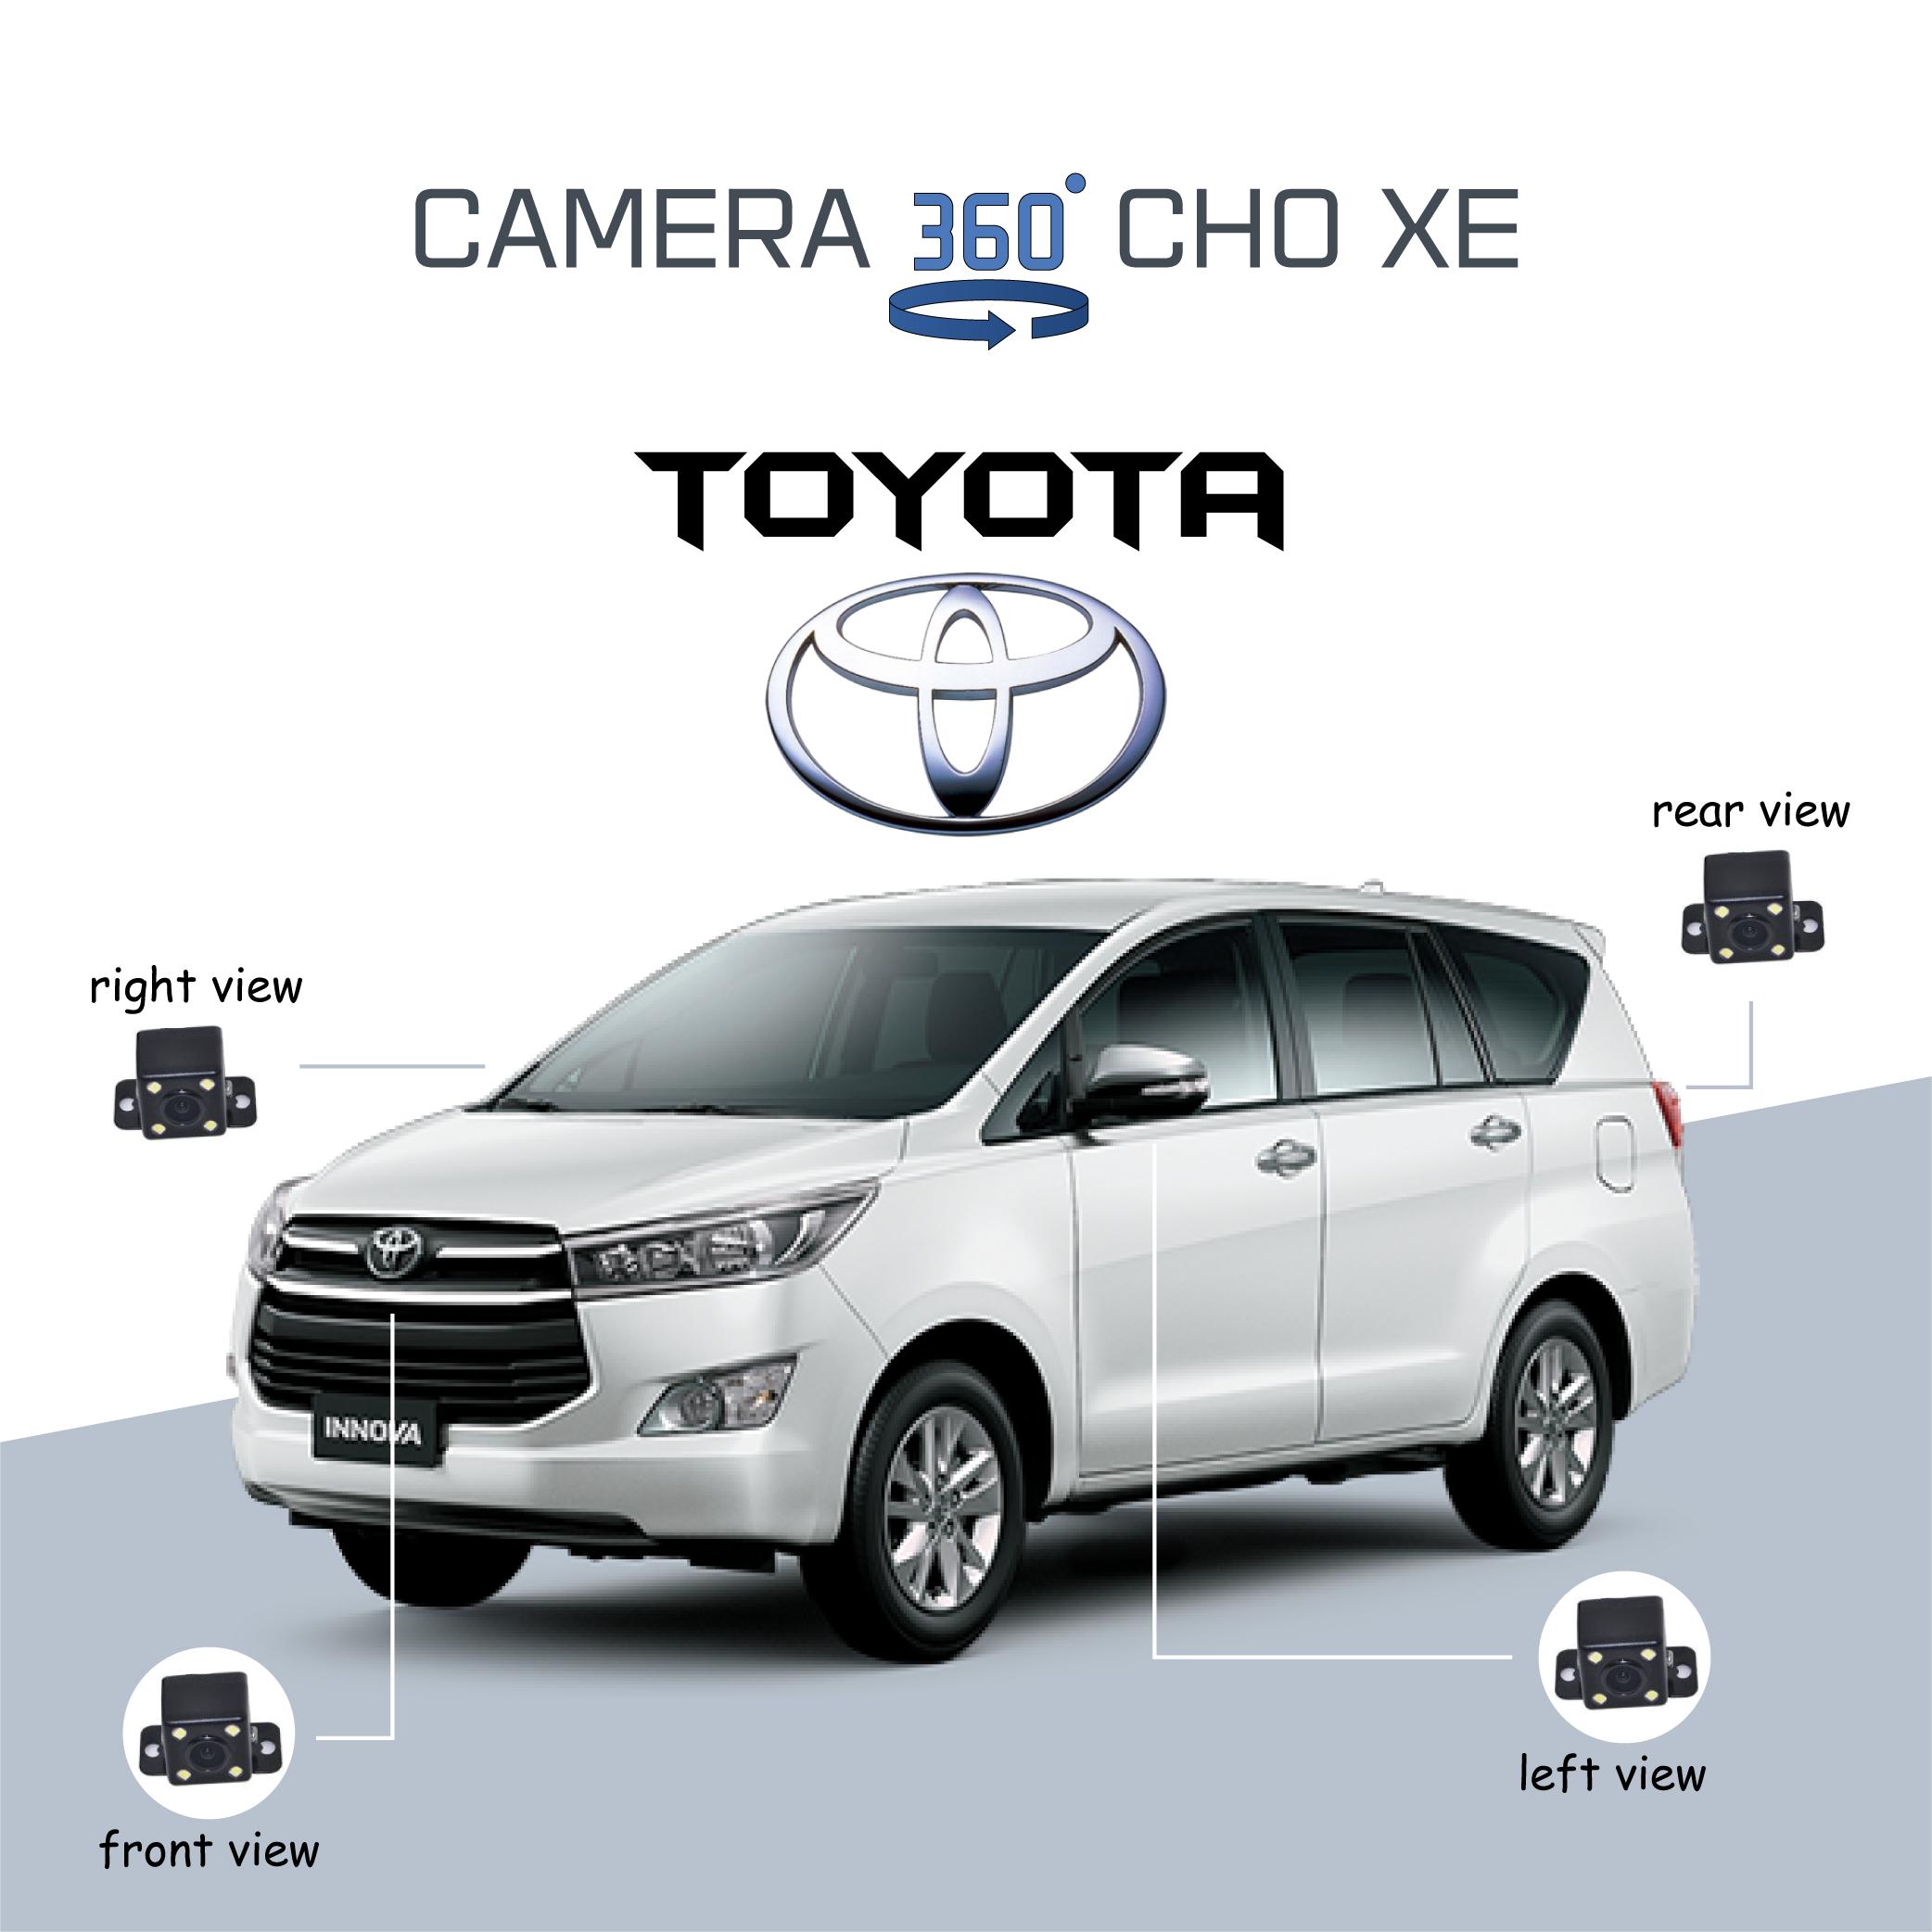 Camera 360 ô tô cho xe Toyota - Hiện đại, an toàn và tiện nghi